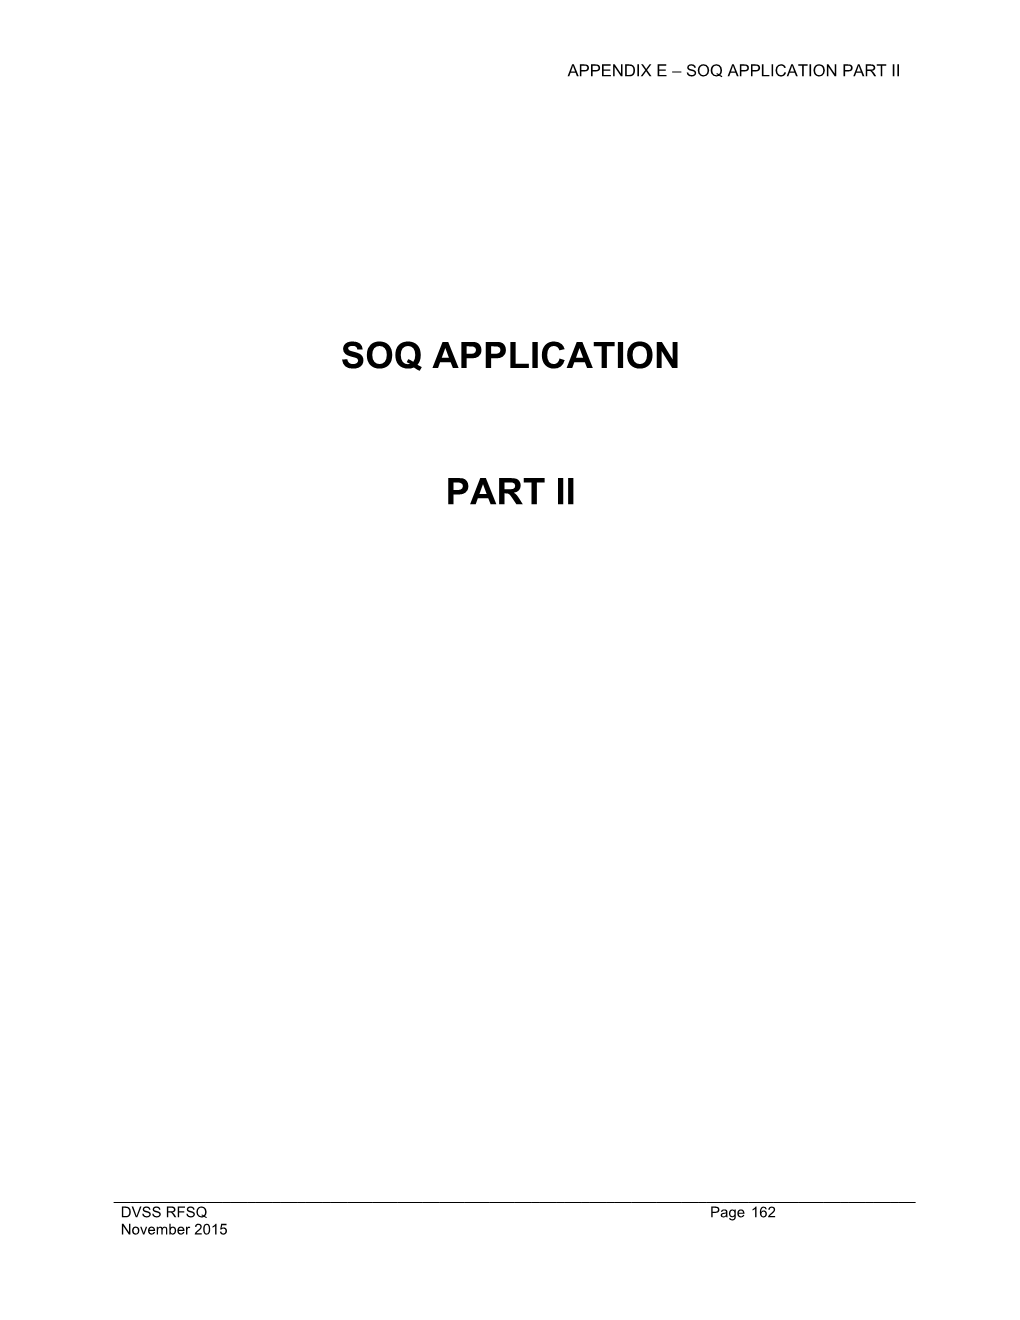 Appendix E Soq Application Part Ii